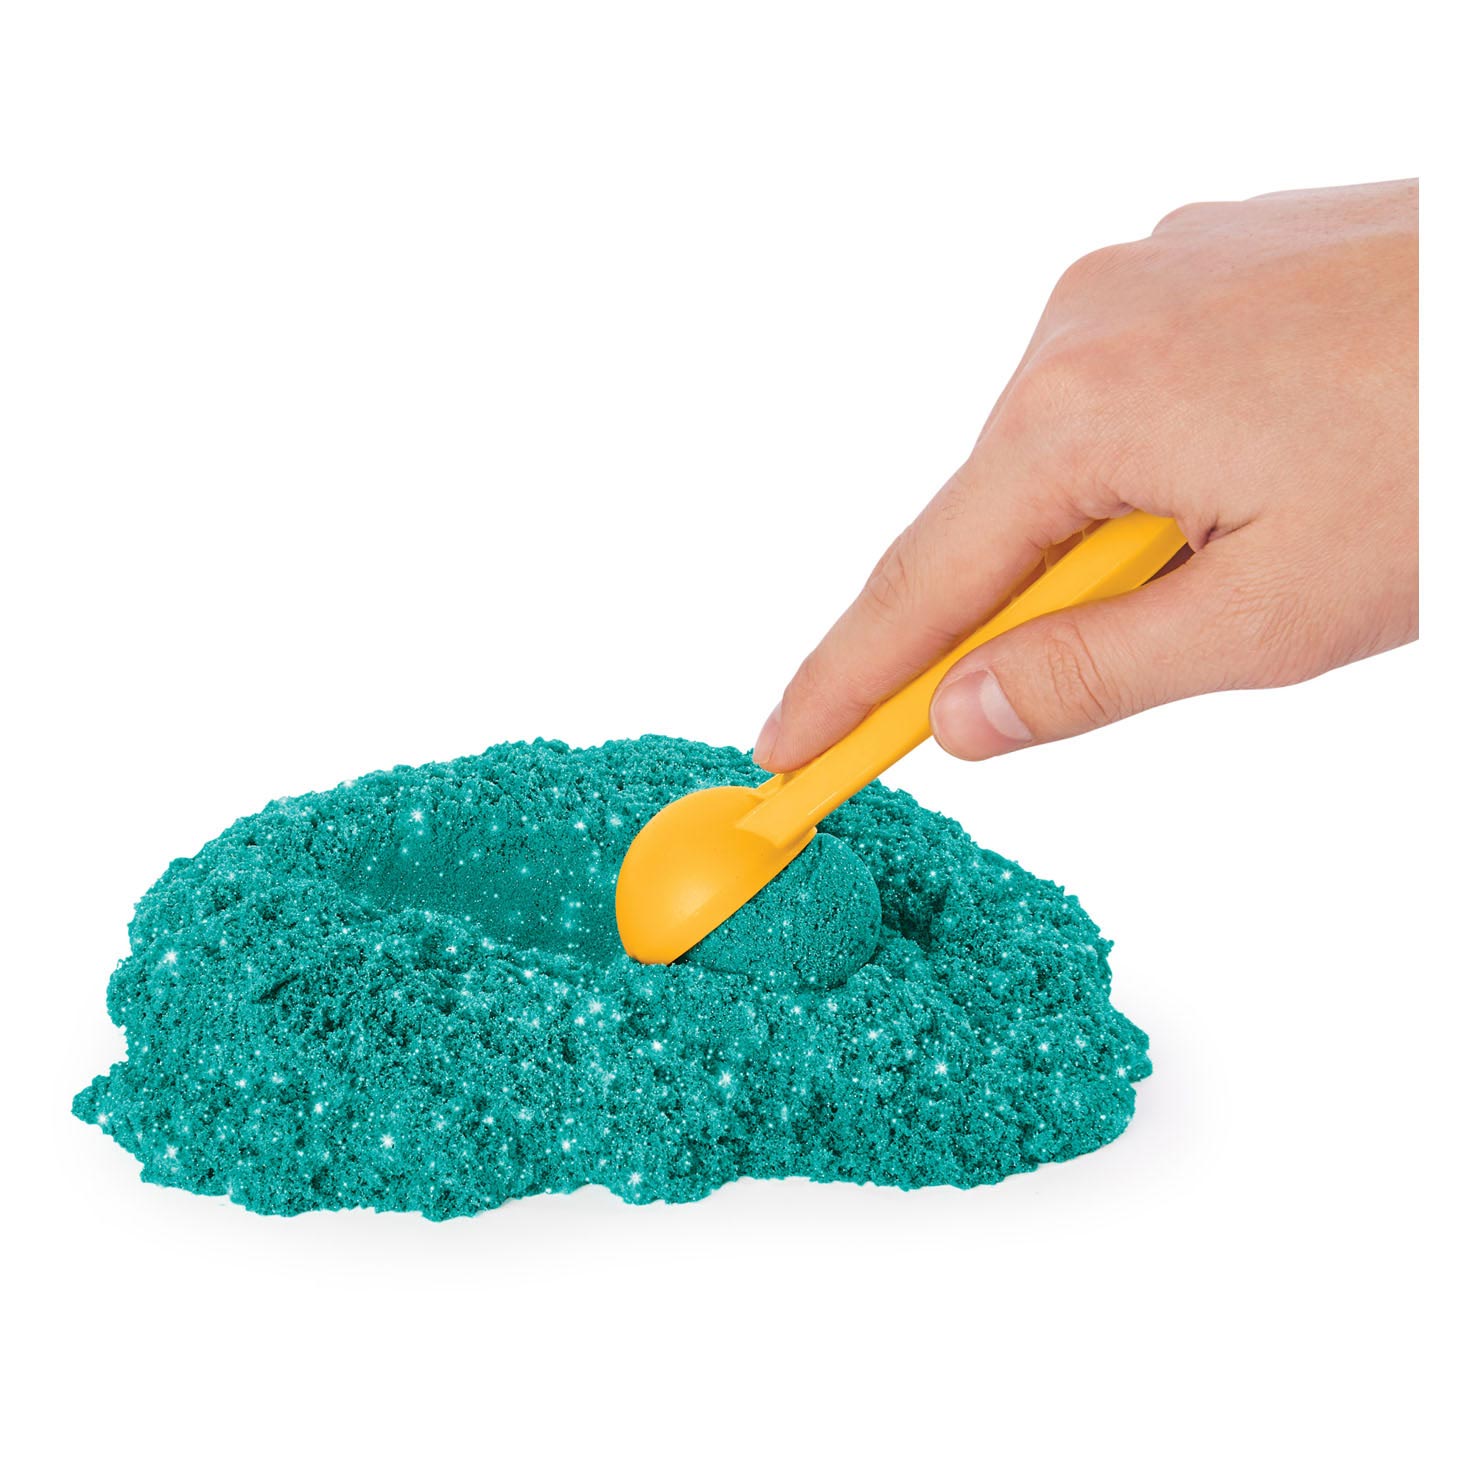 Kinetic Sand - Shimmer Zandkasteel Set Blauwgroen, 453gr.